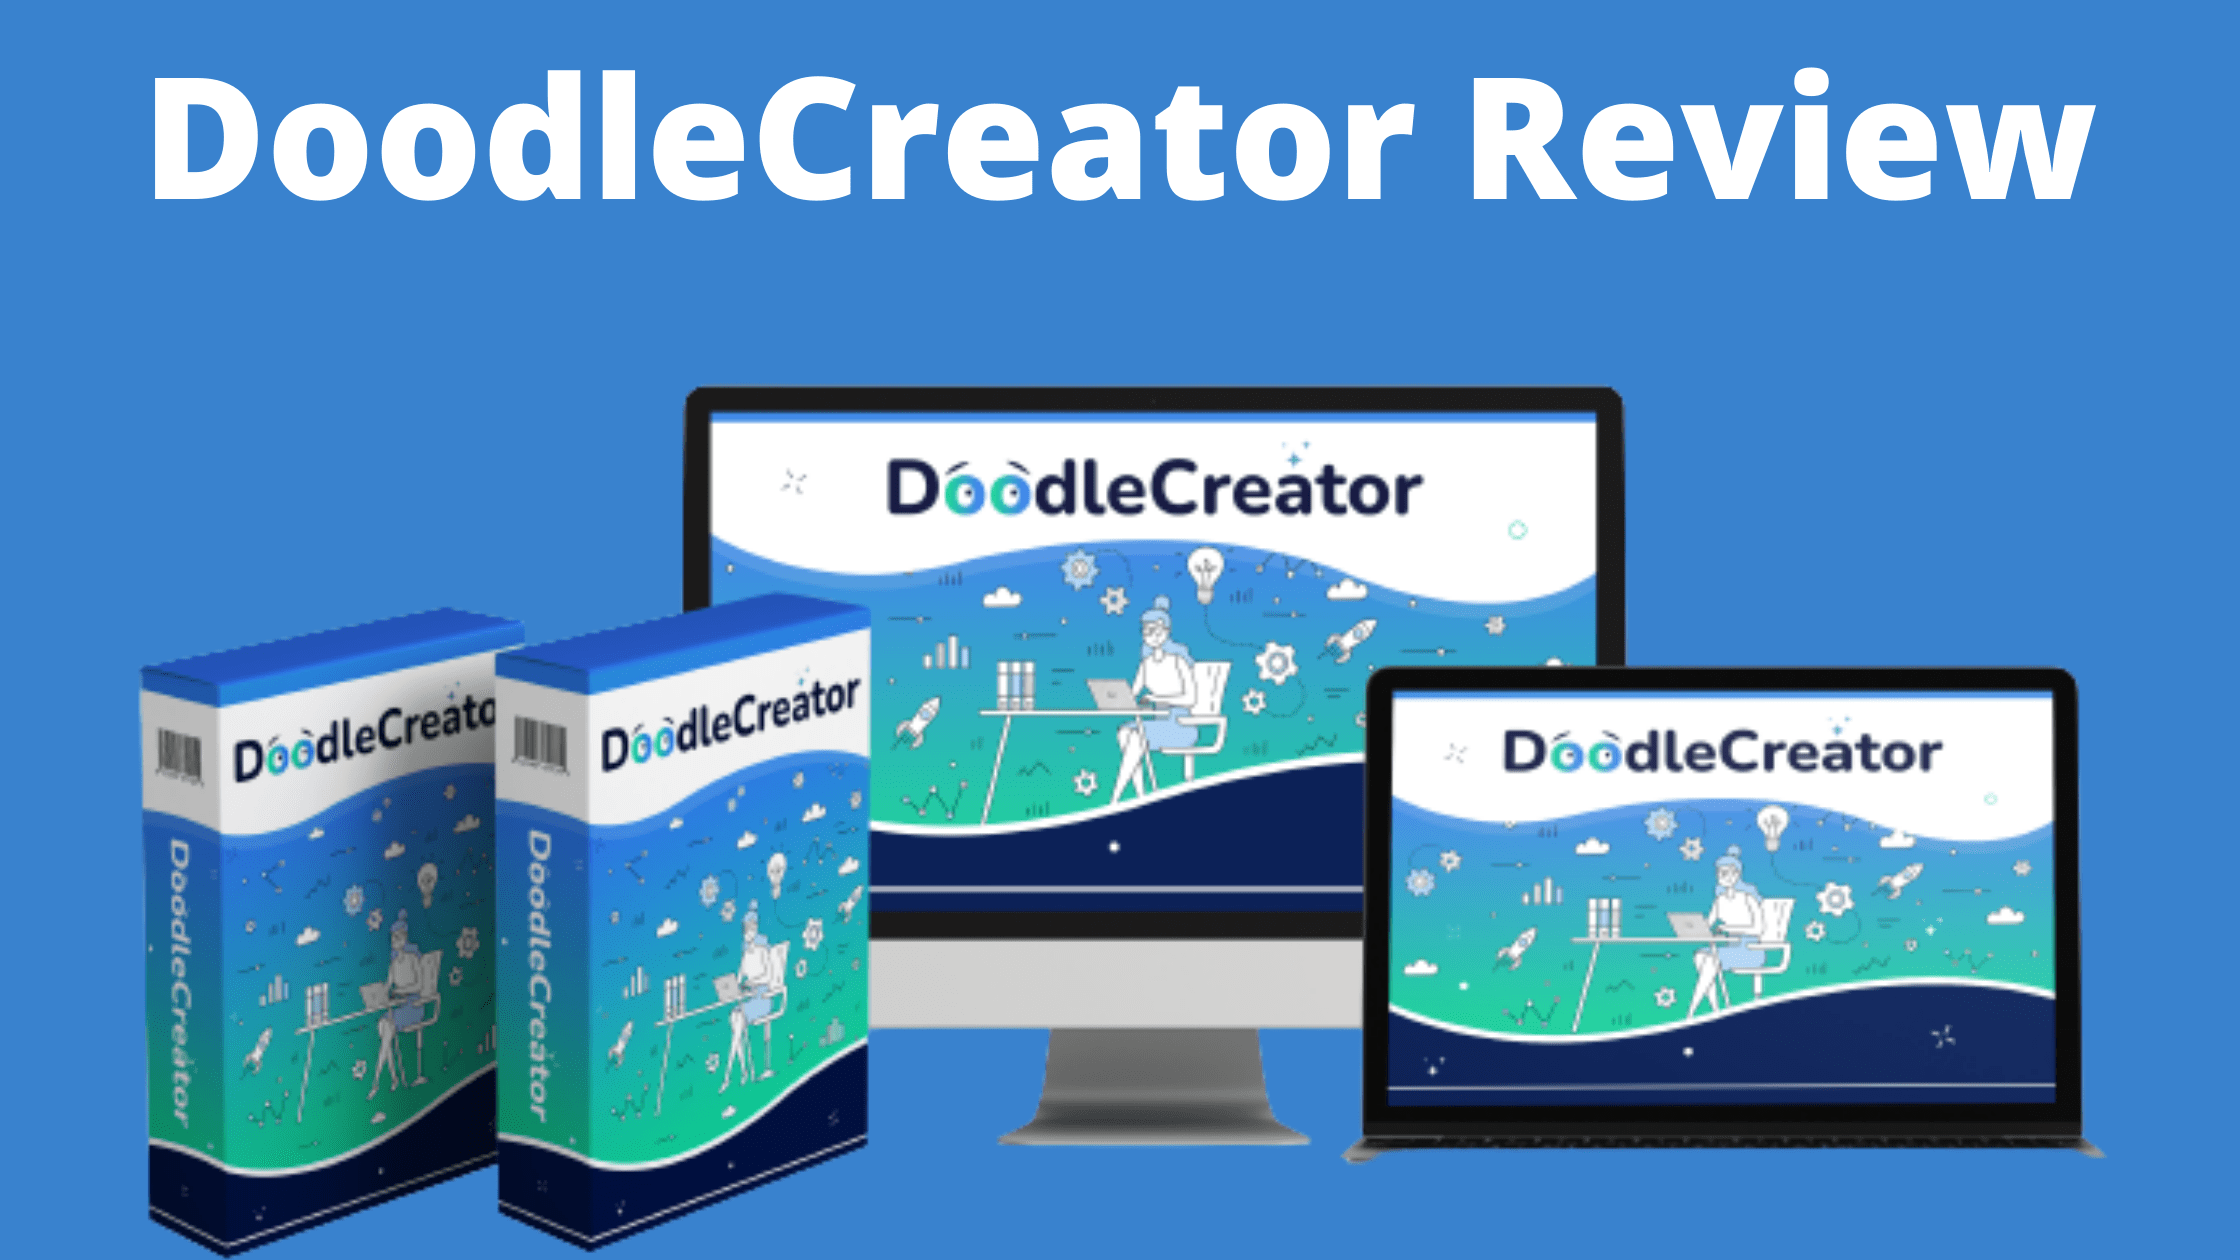 DoodleCreator Review